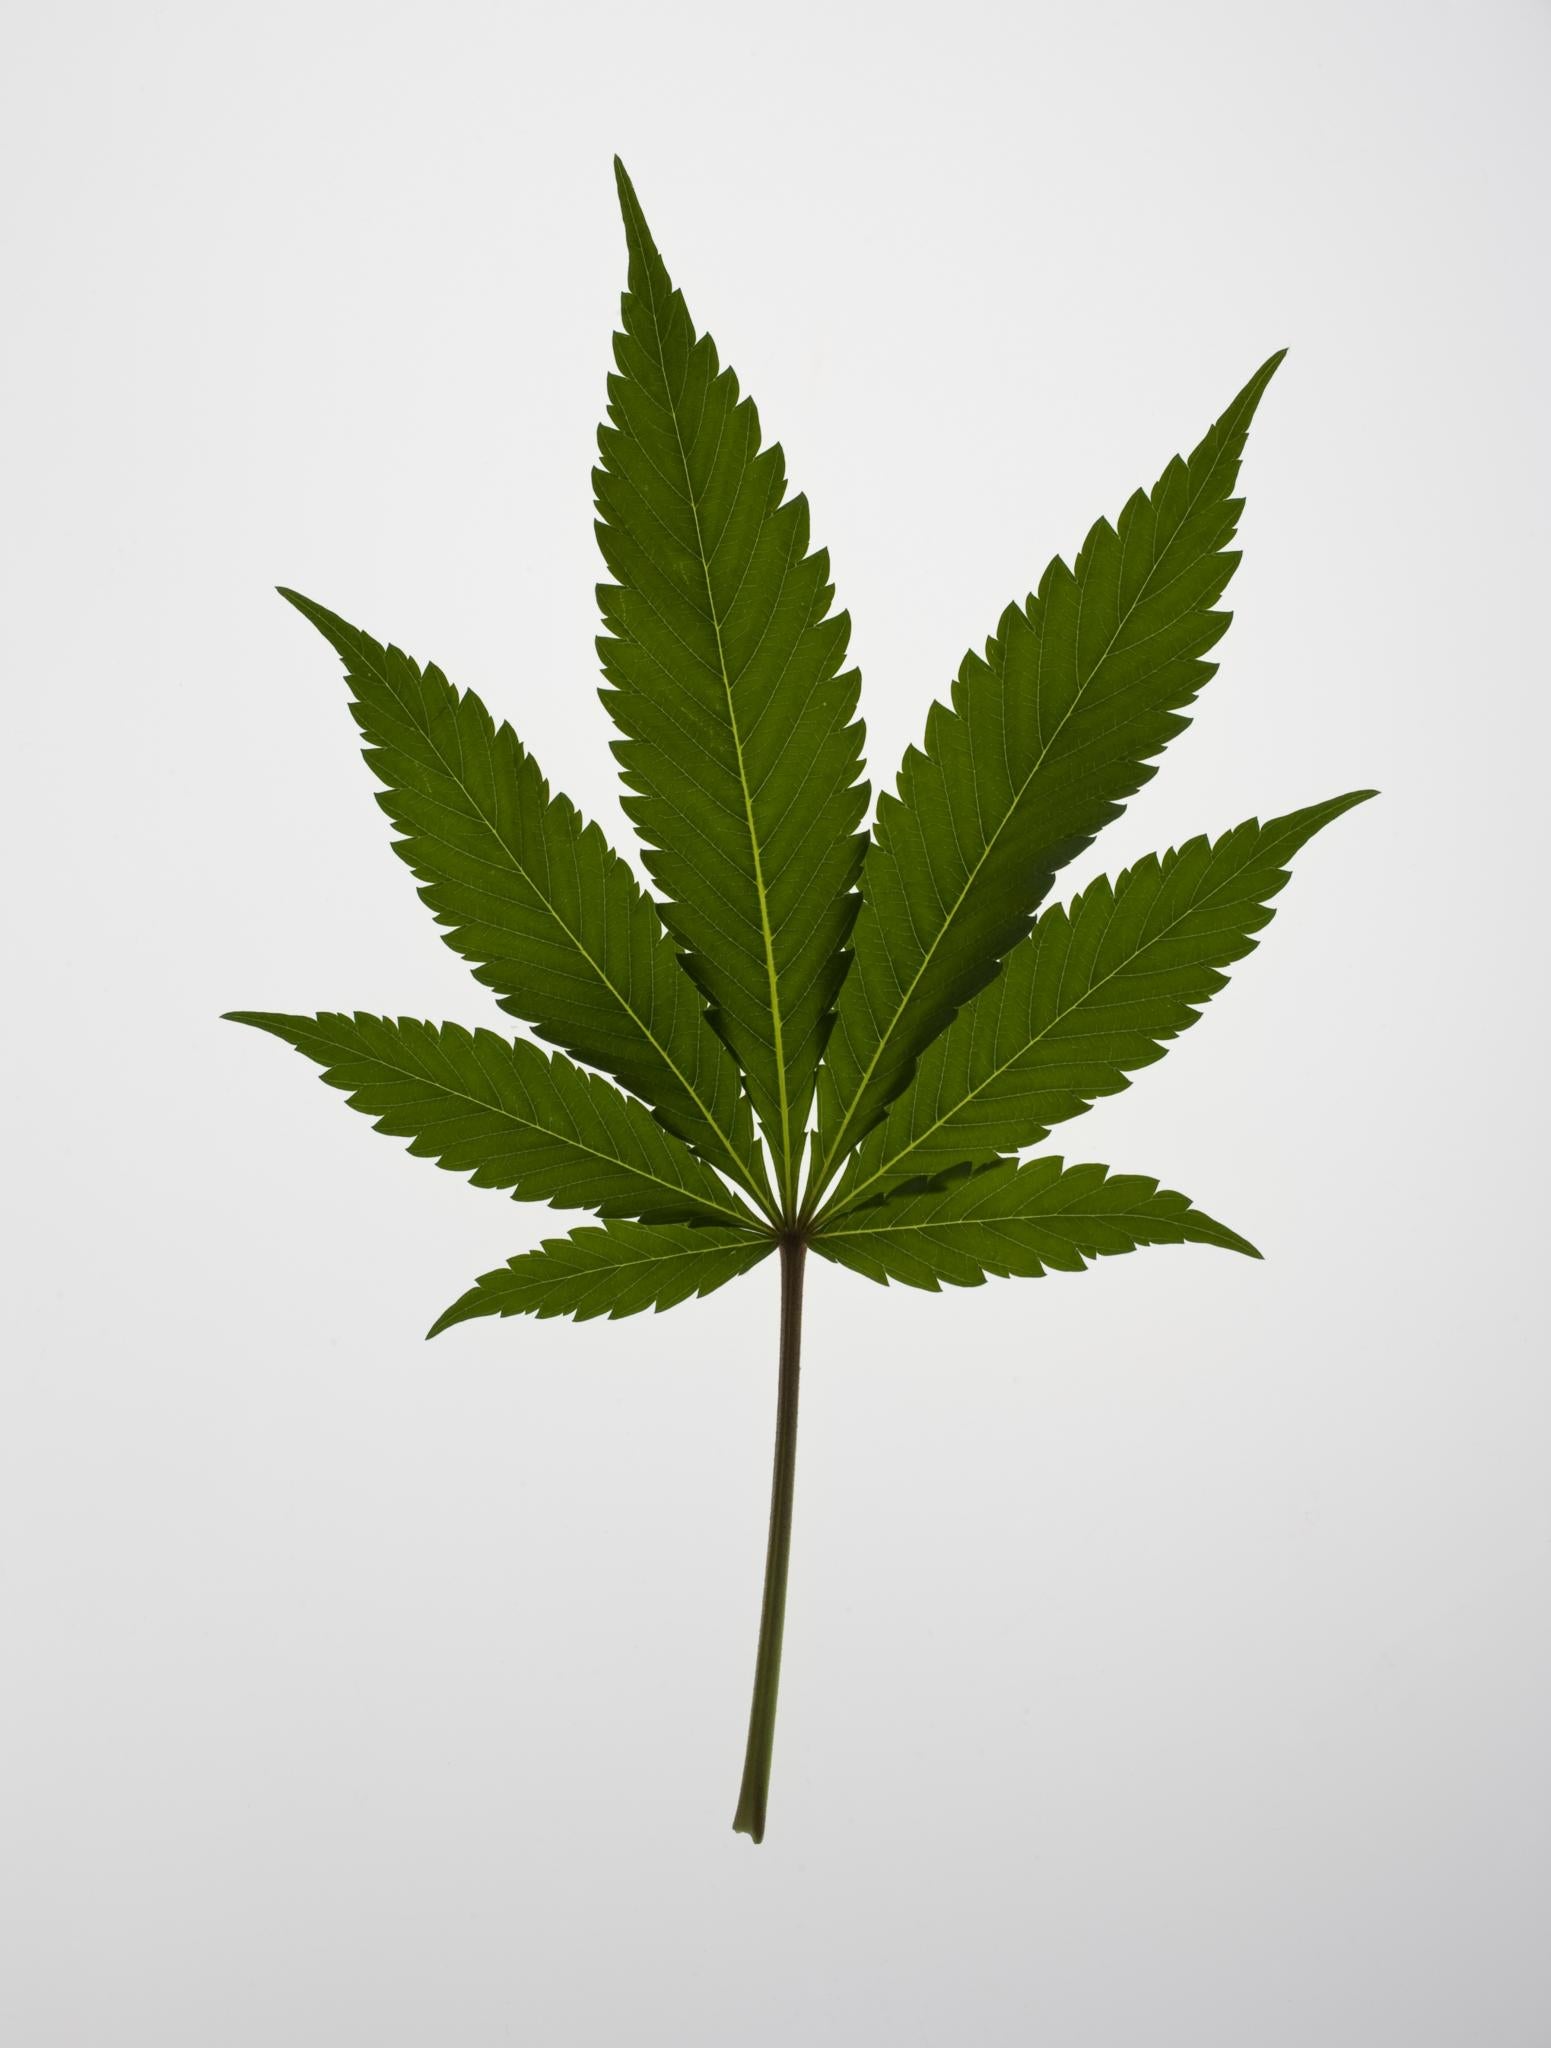 Do You Support Legalizing Marijuana?